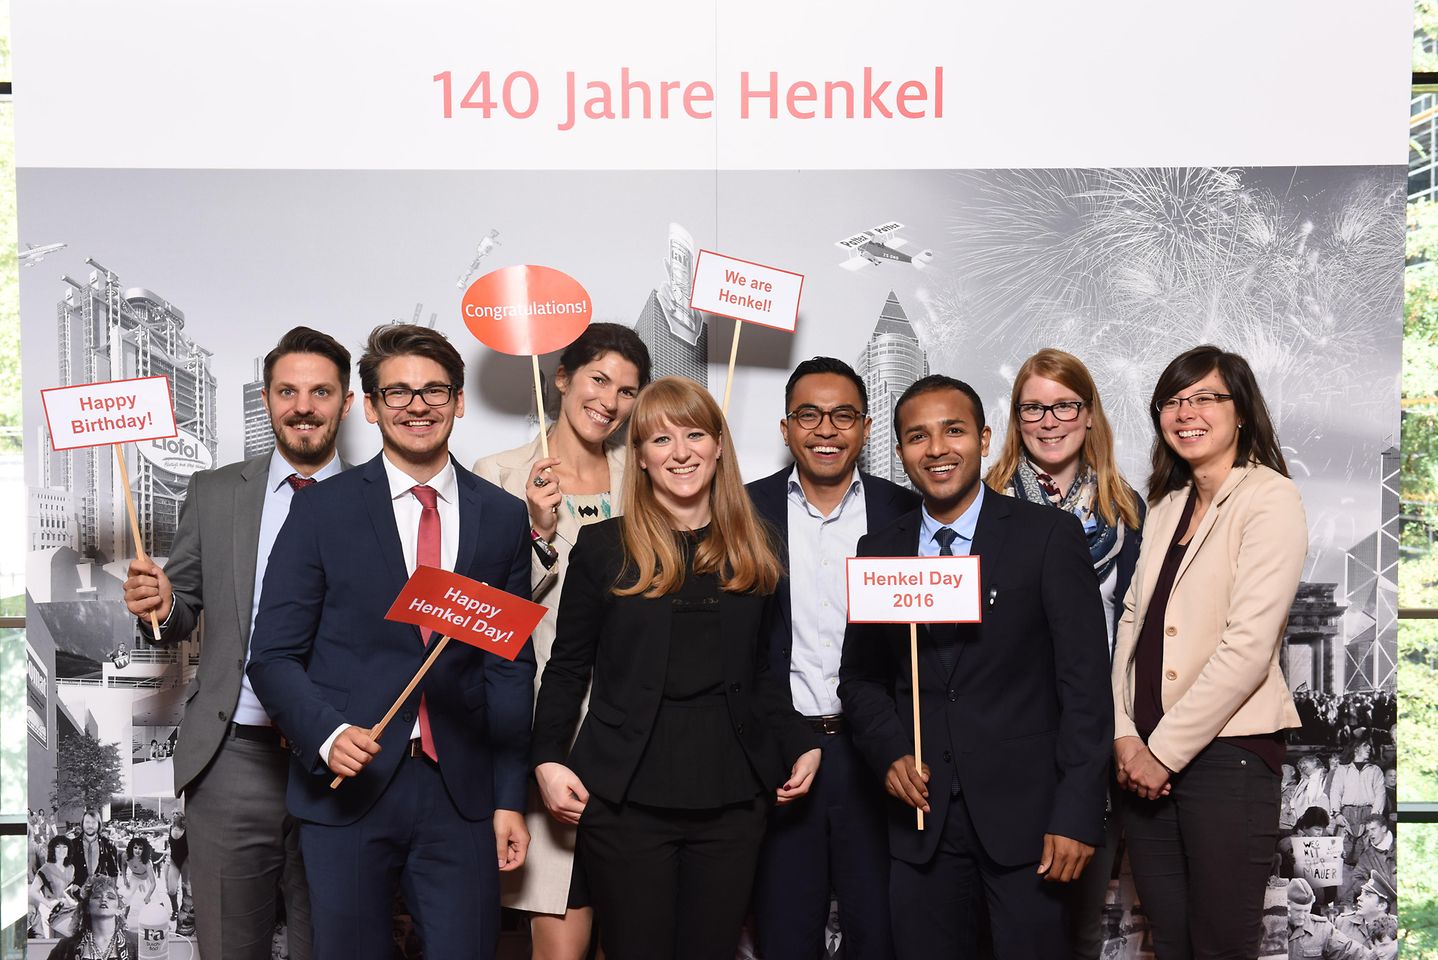 Henkel140-team-germany-timeline wall.JPG